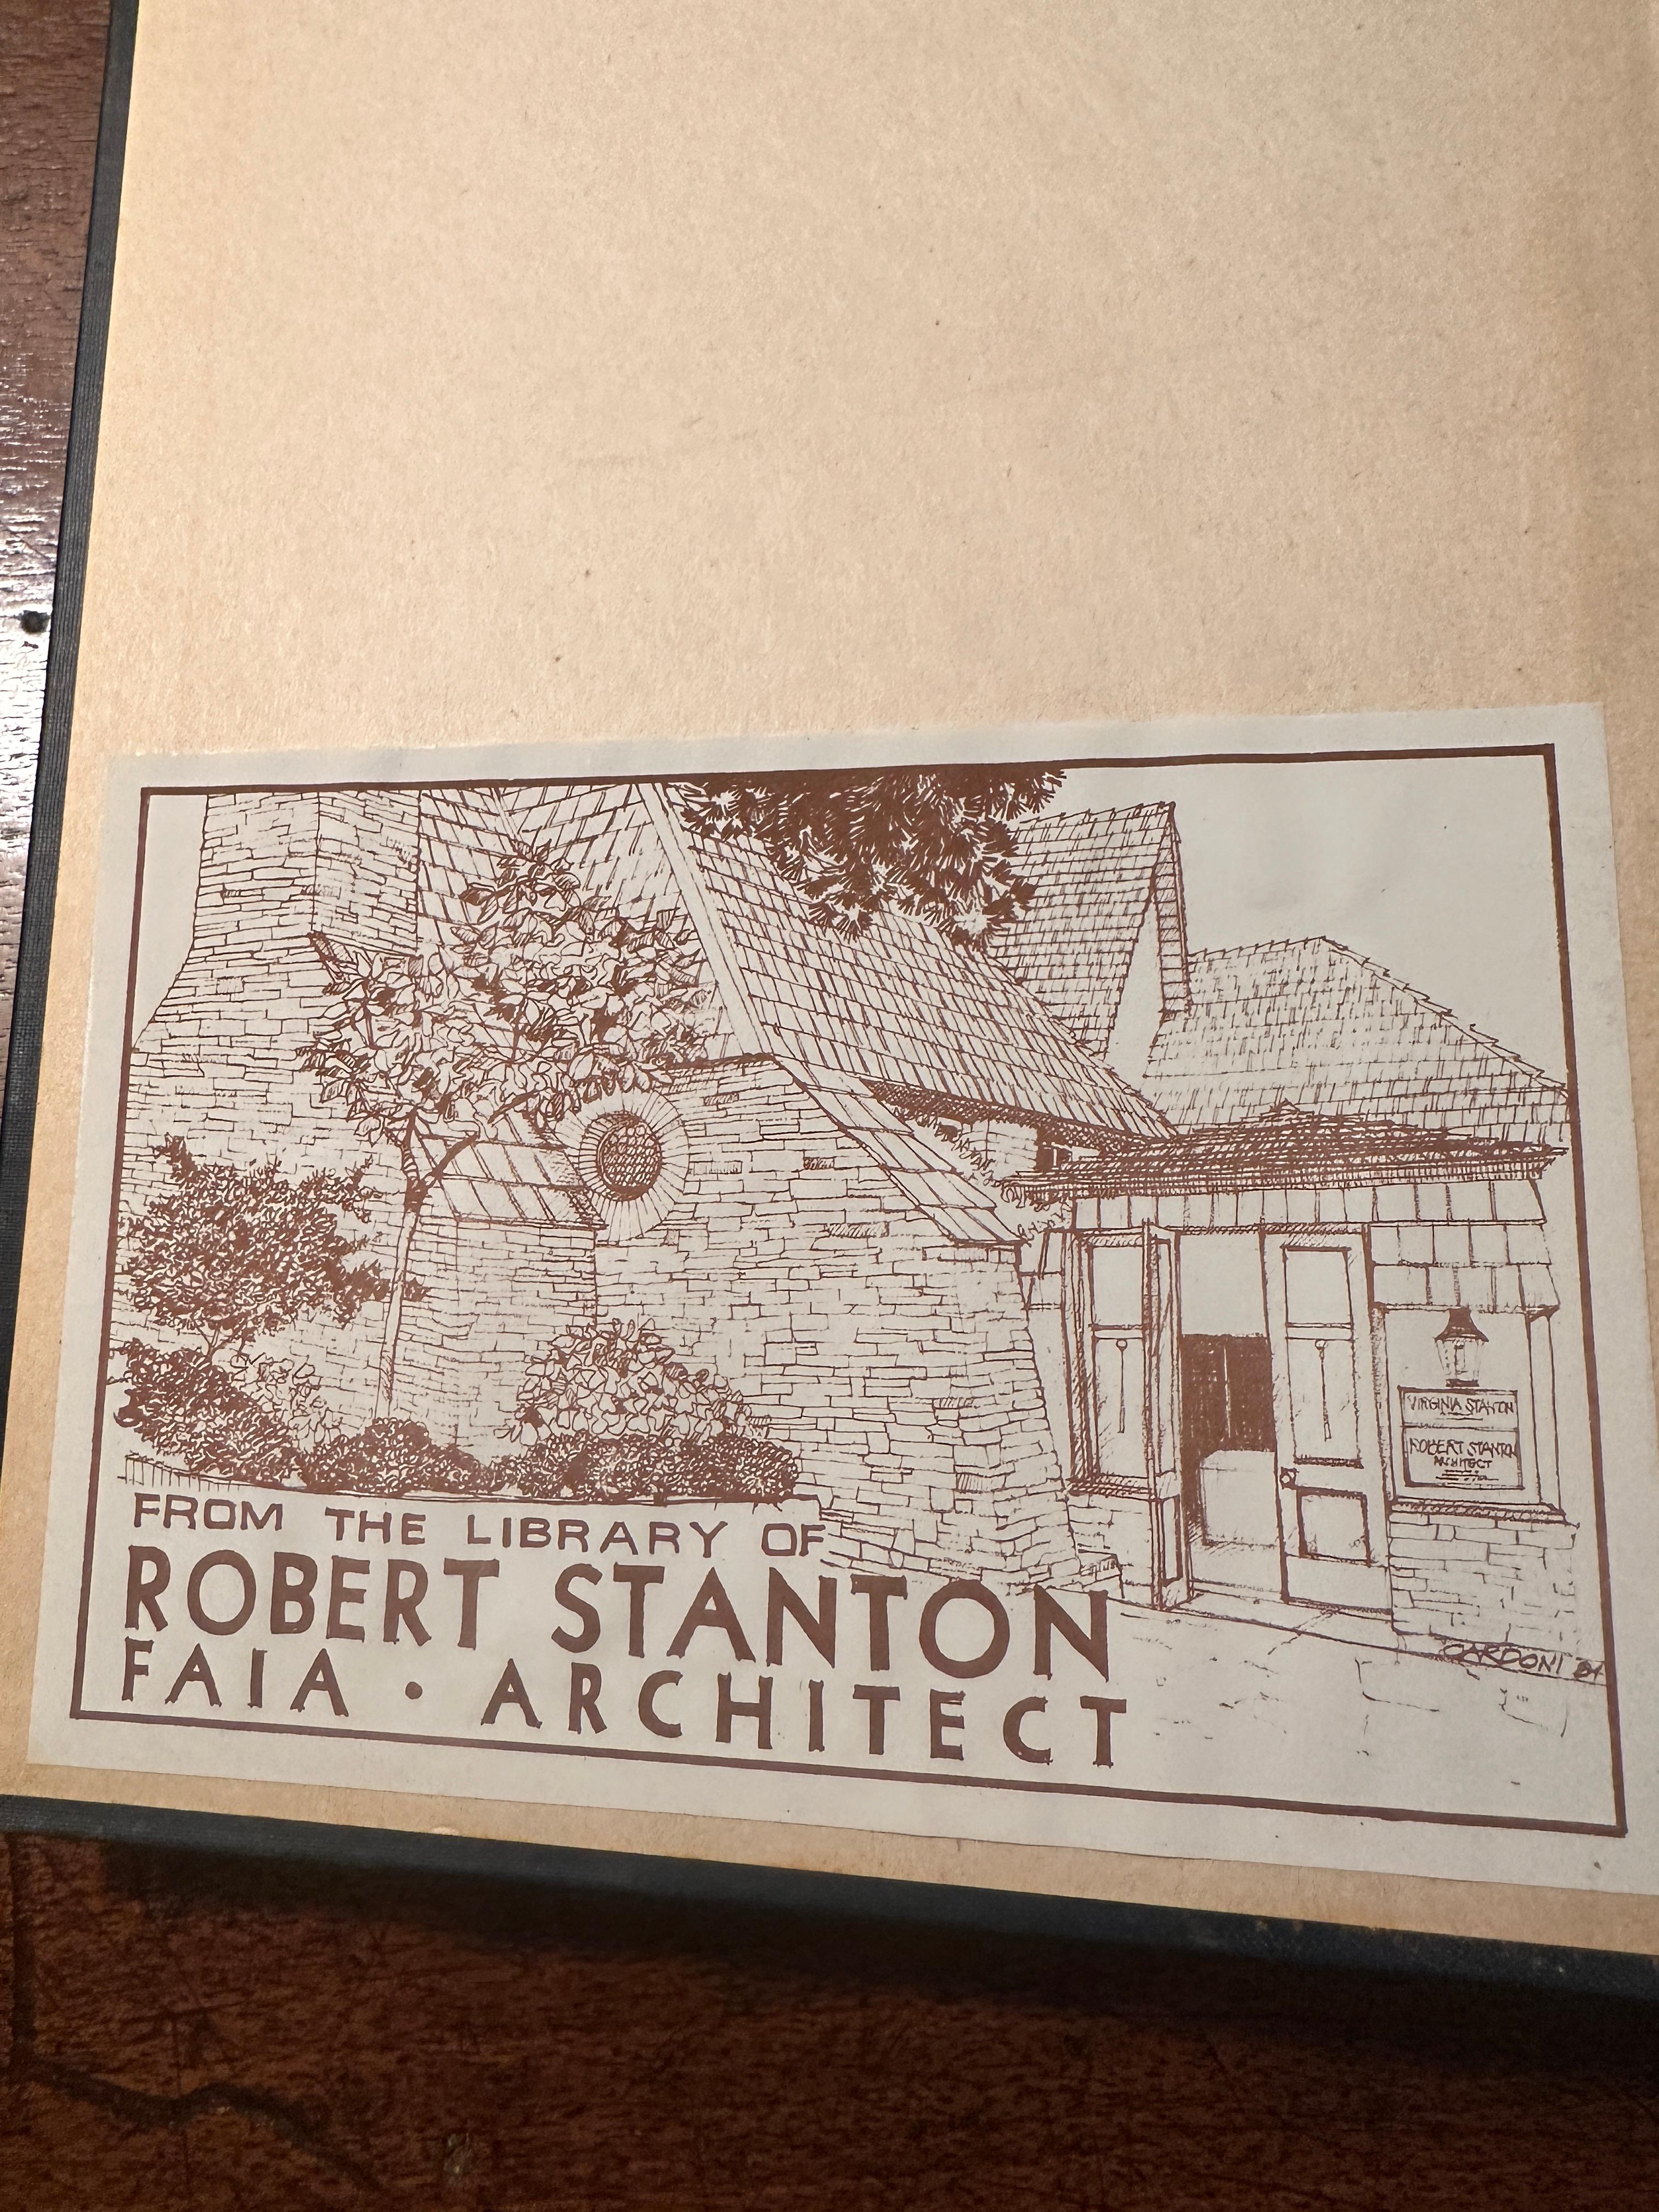 Ce livre a été vendu aux enchères par la Bibliothèque Publique de Monterey dans le cadre de
une grande collection de livres, anciennement propriété du célèbre architecte
Robert Stanton, qui a hérité de nombreux livres de la sœur de David
Adler,